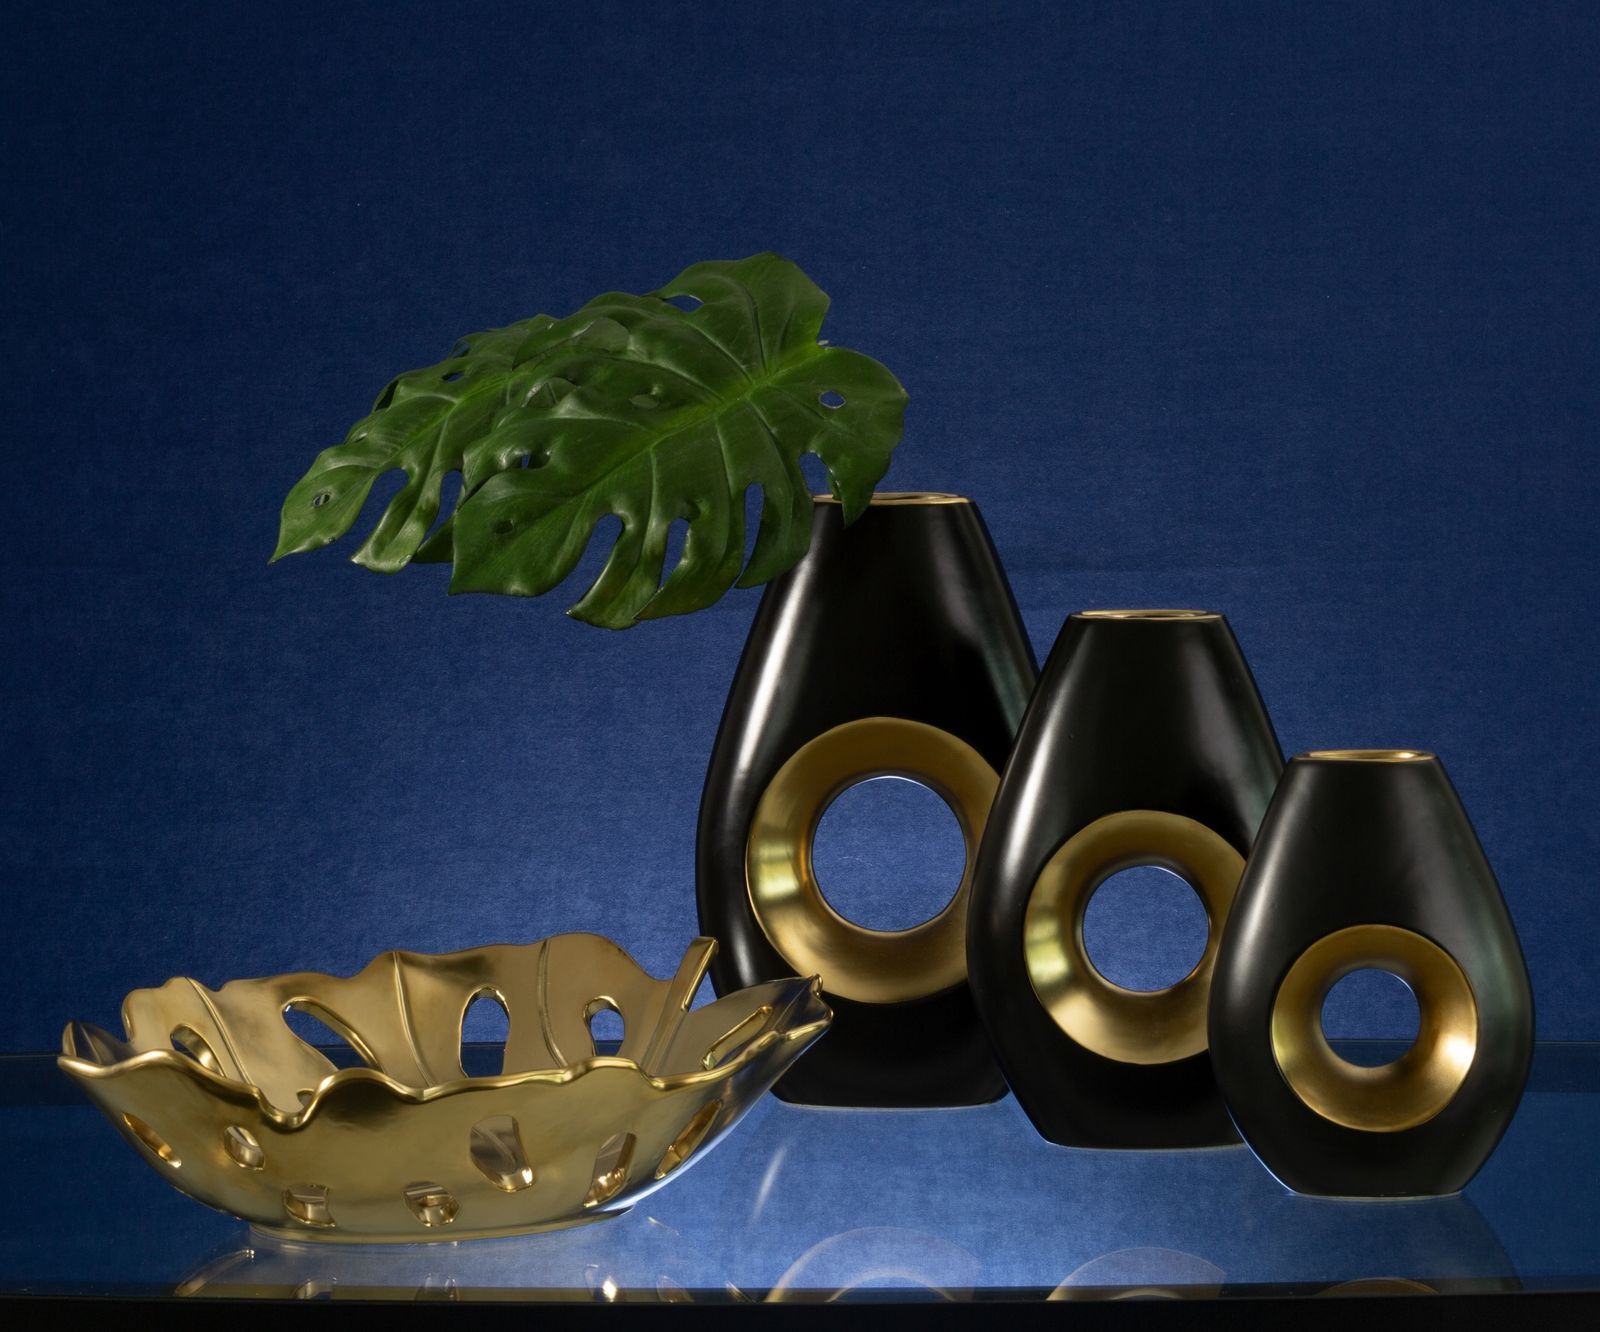 Váza MIRA 01 čierna / zlatá